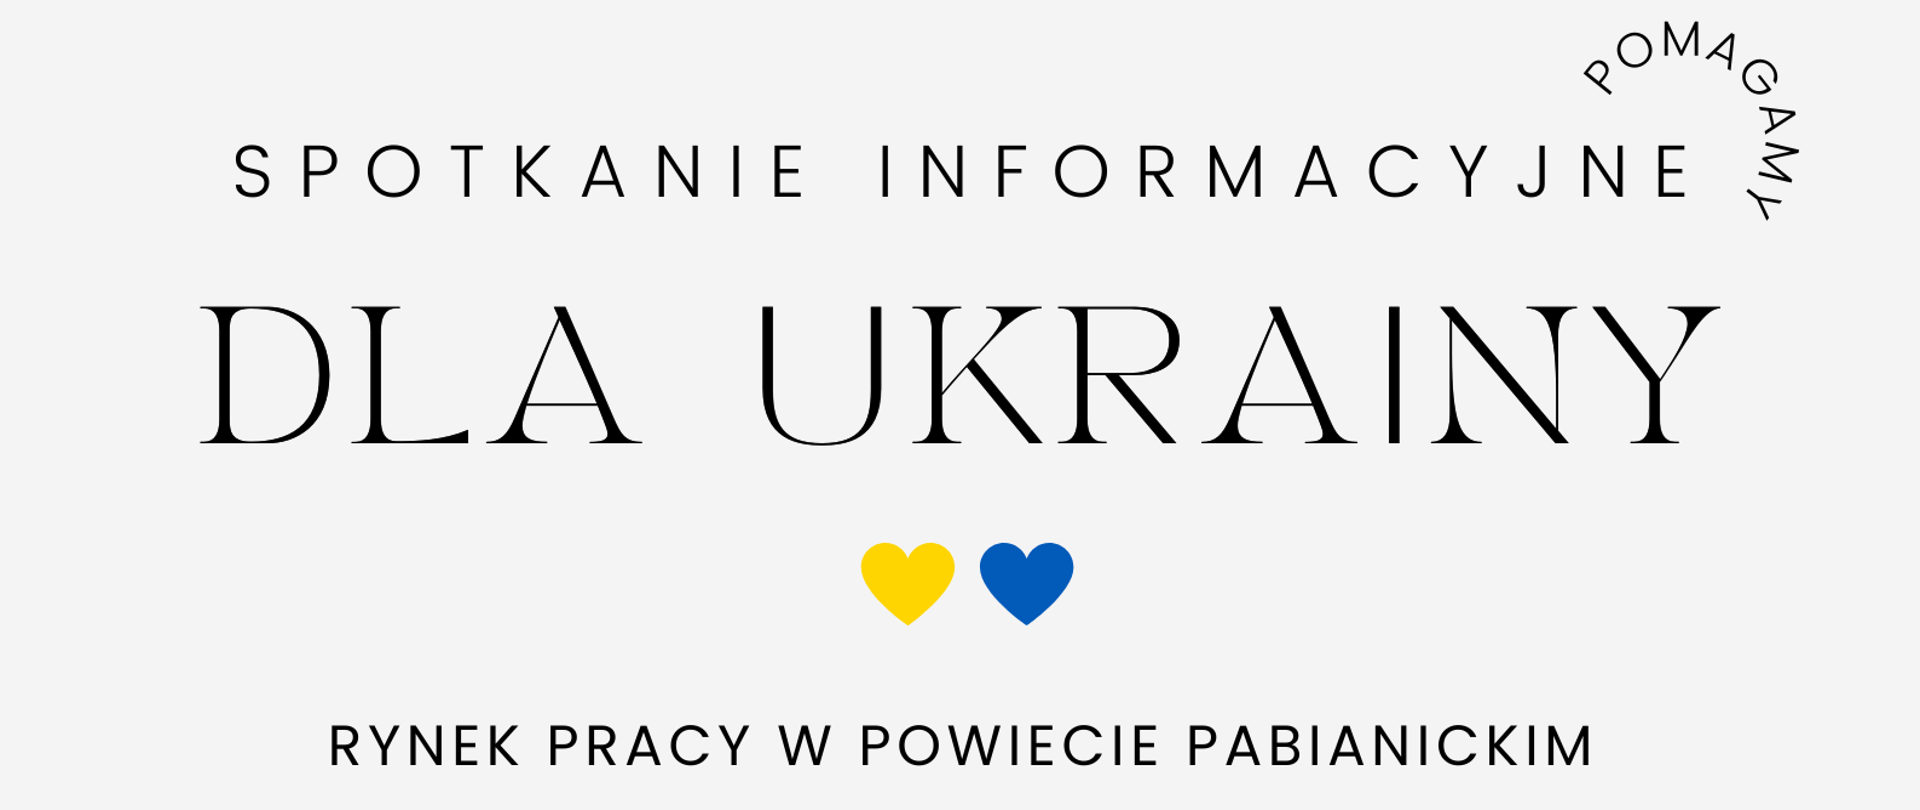 Spotkanie informacyjne dla Ukrainy